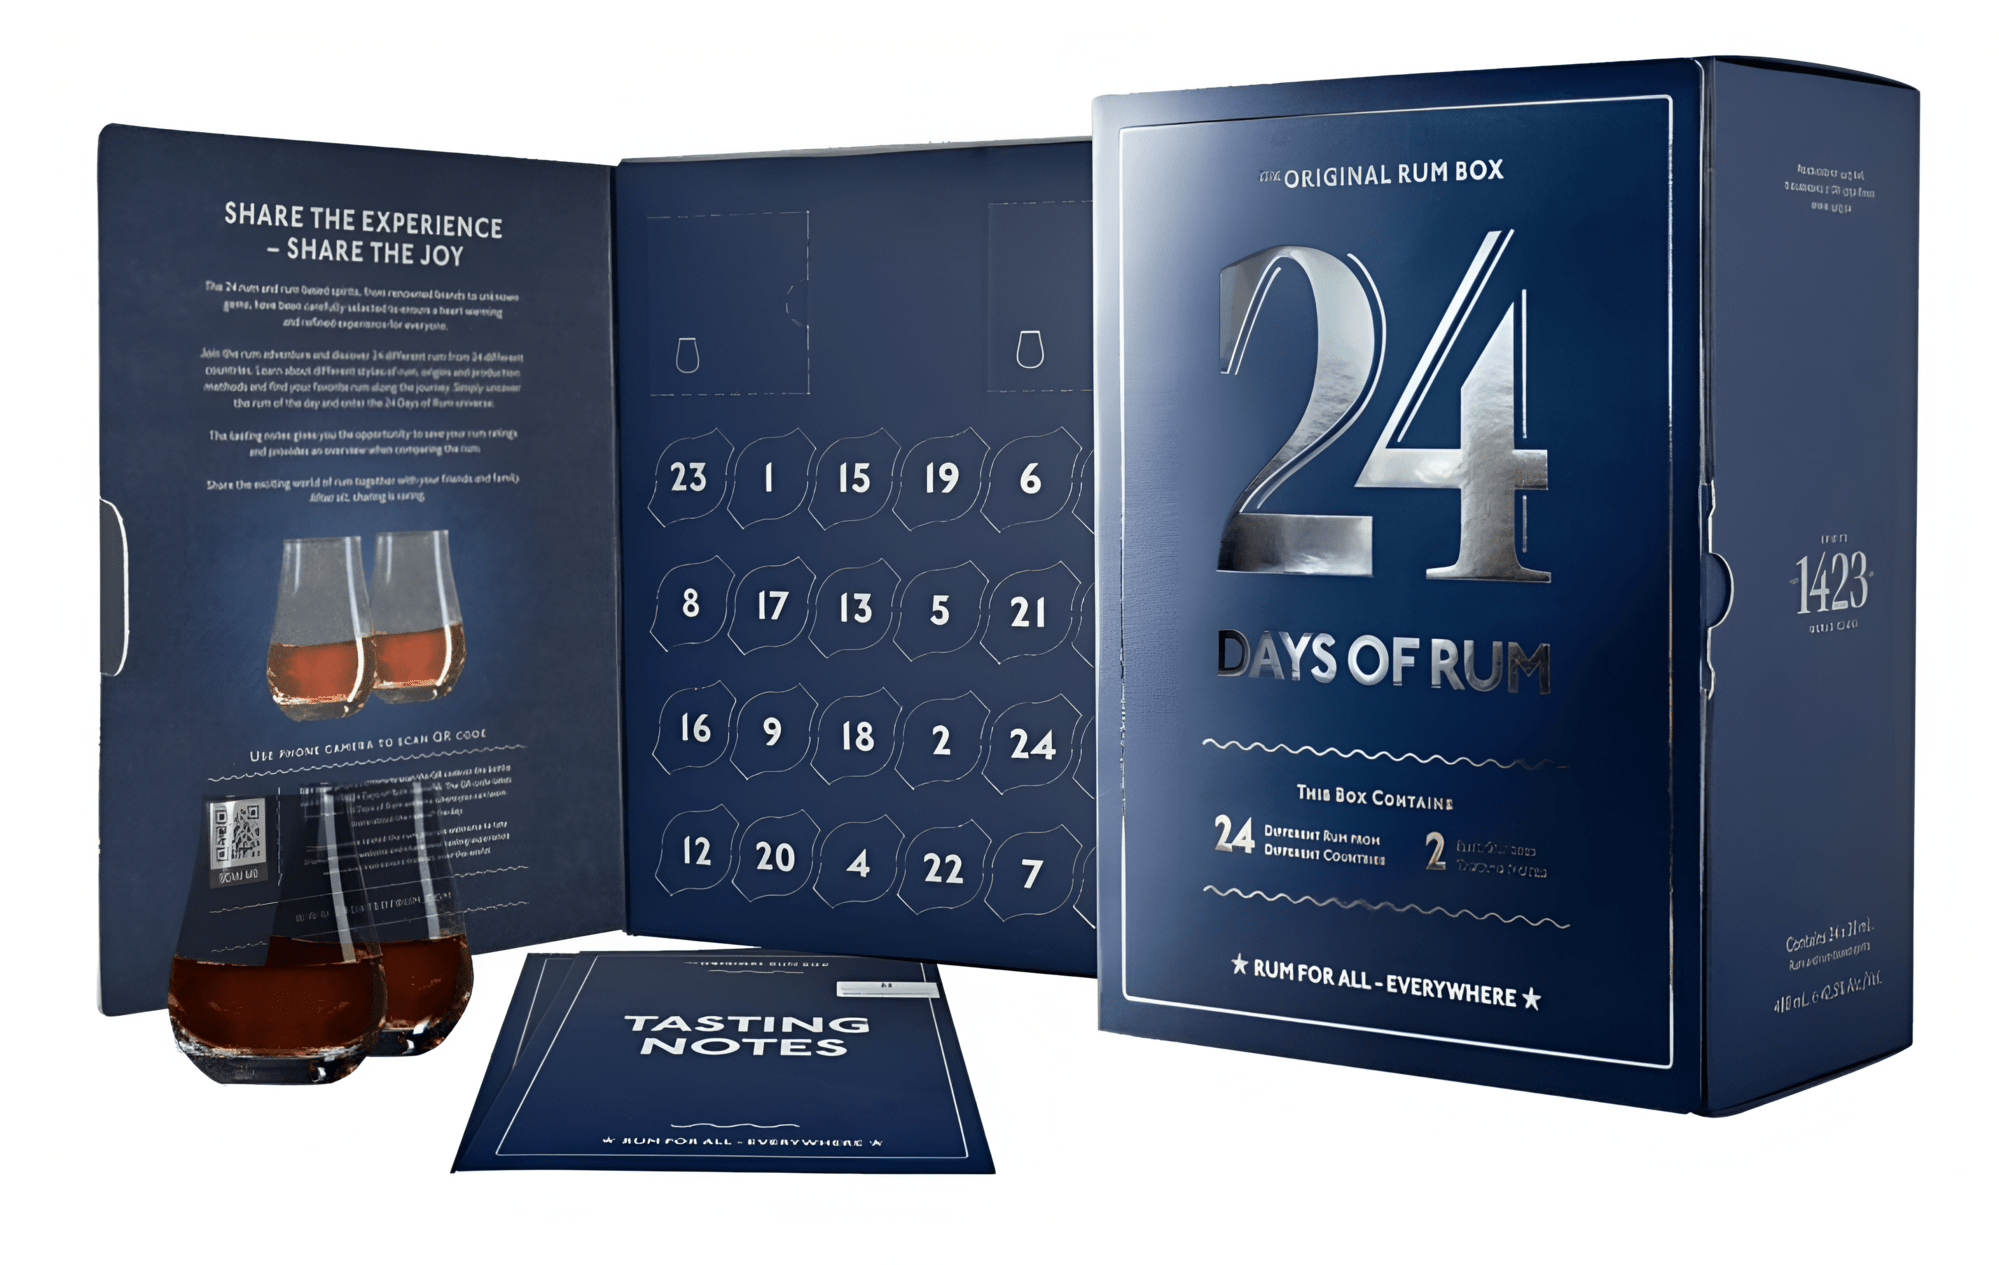 1423 Aps Rumový kalendář 2023 42,5% 24 x 0,02 l (dárkové balení 2 sklenice)